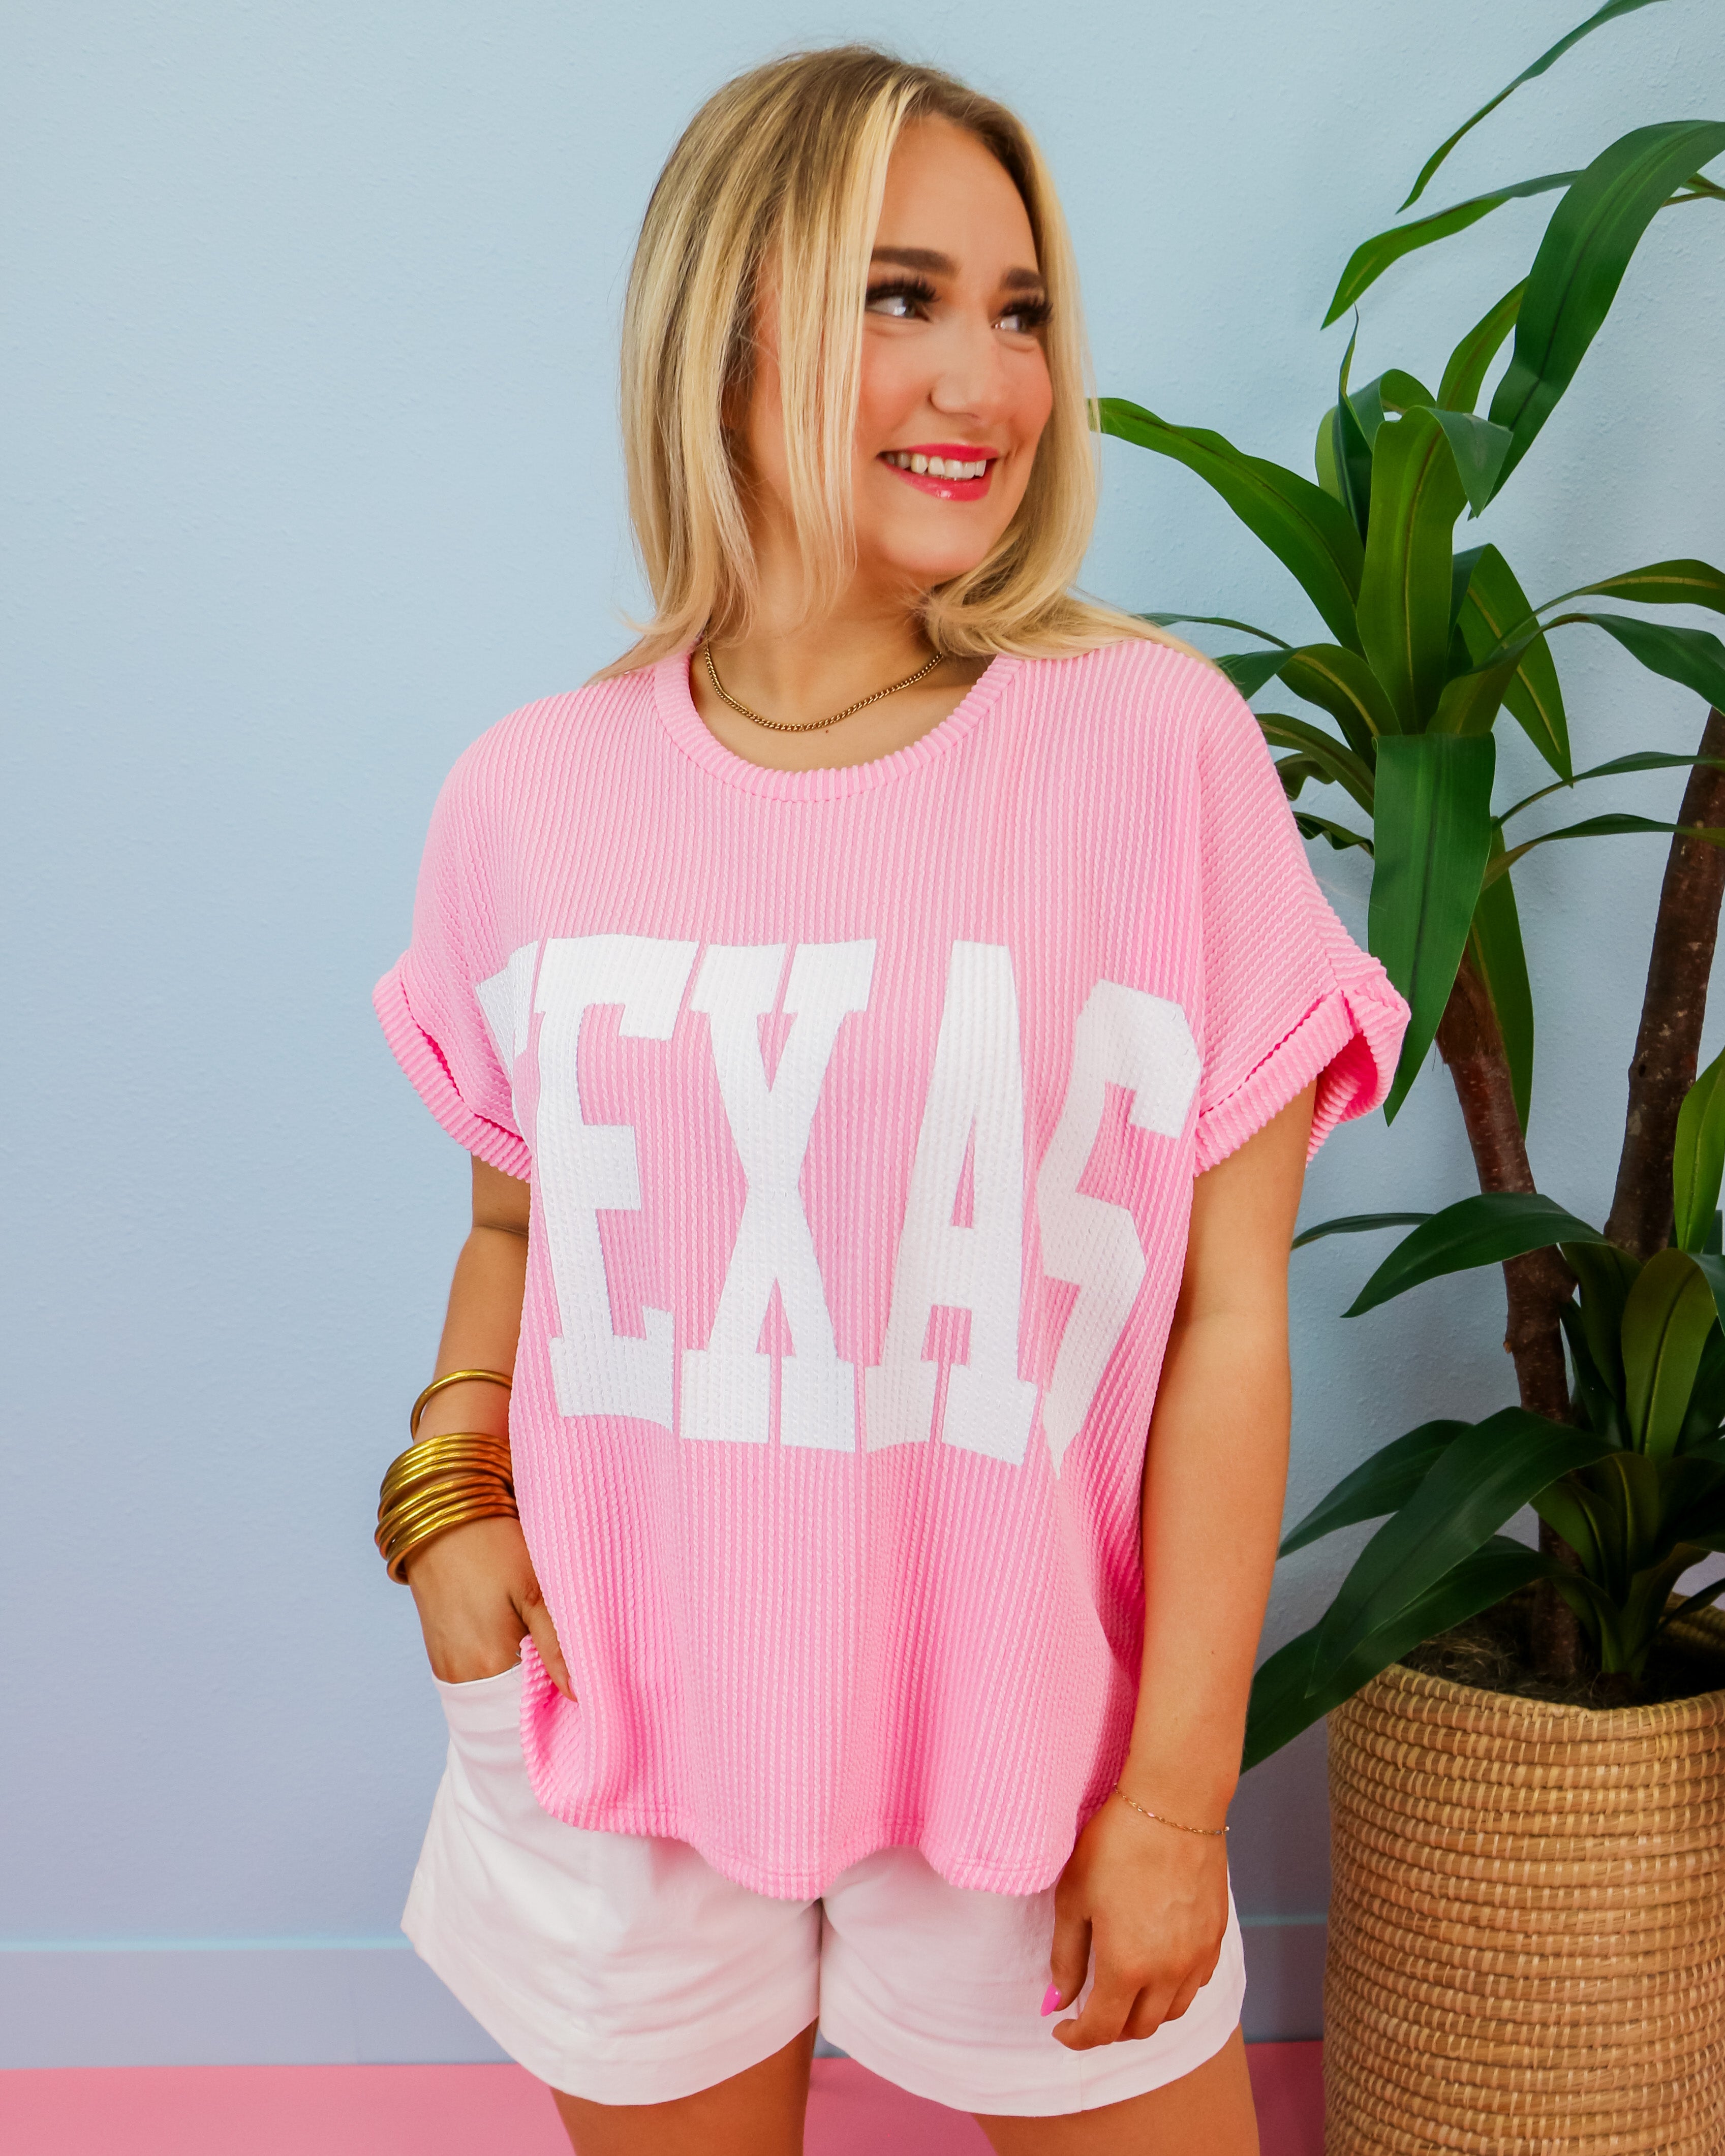 'TEXAS' Comfy Oversize Graphic Sweatshirt Top in Baby Pink